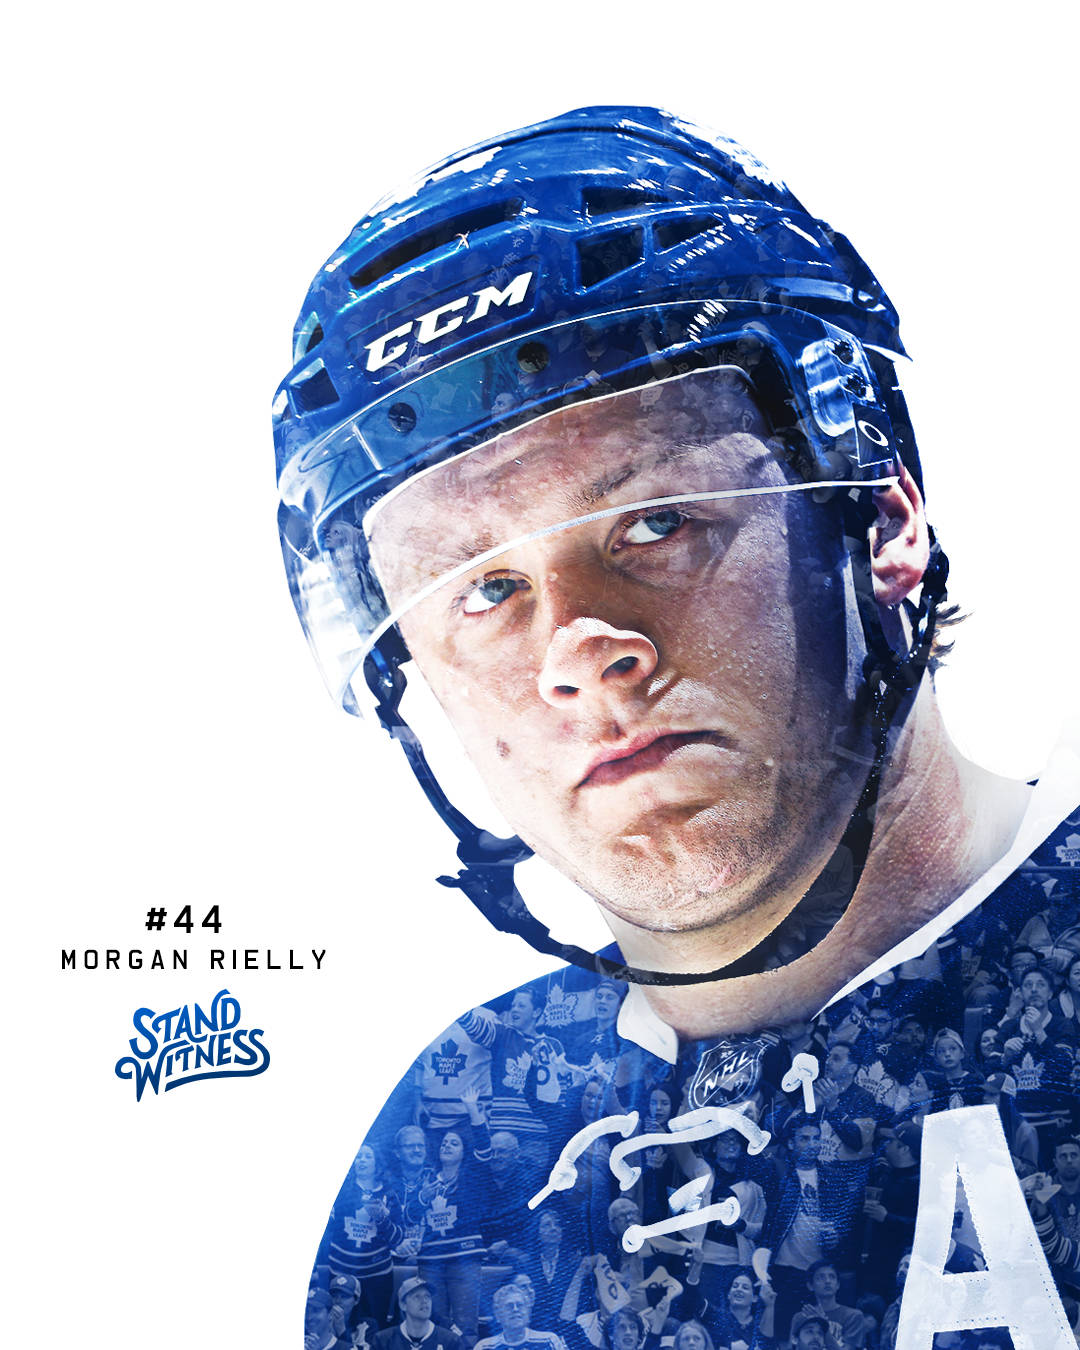 Artegráfico De Morgan Rielly De Los Toronto Maple Leafs. Fondo de pantalla